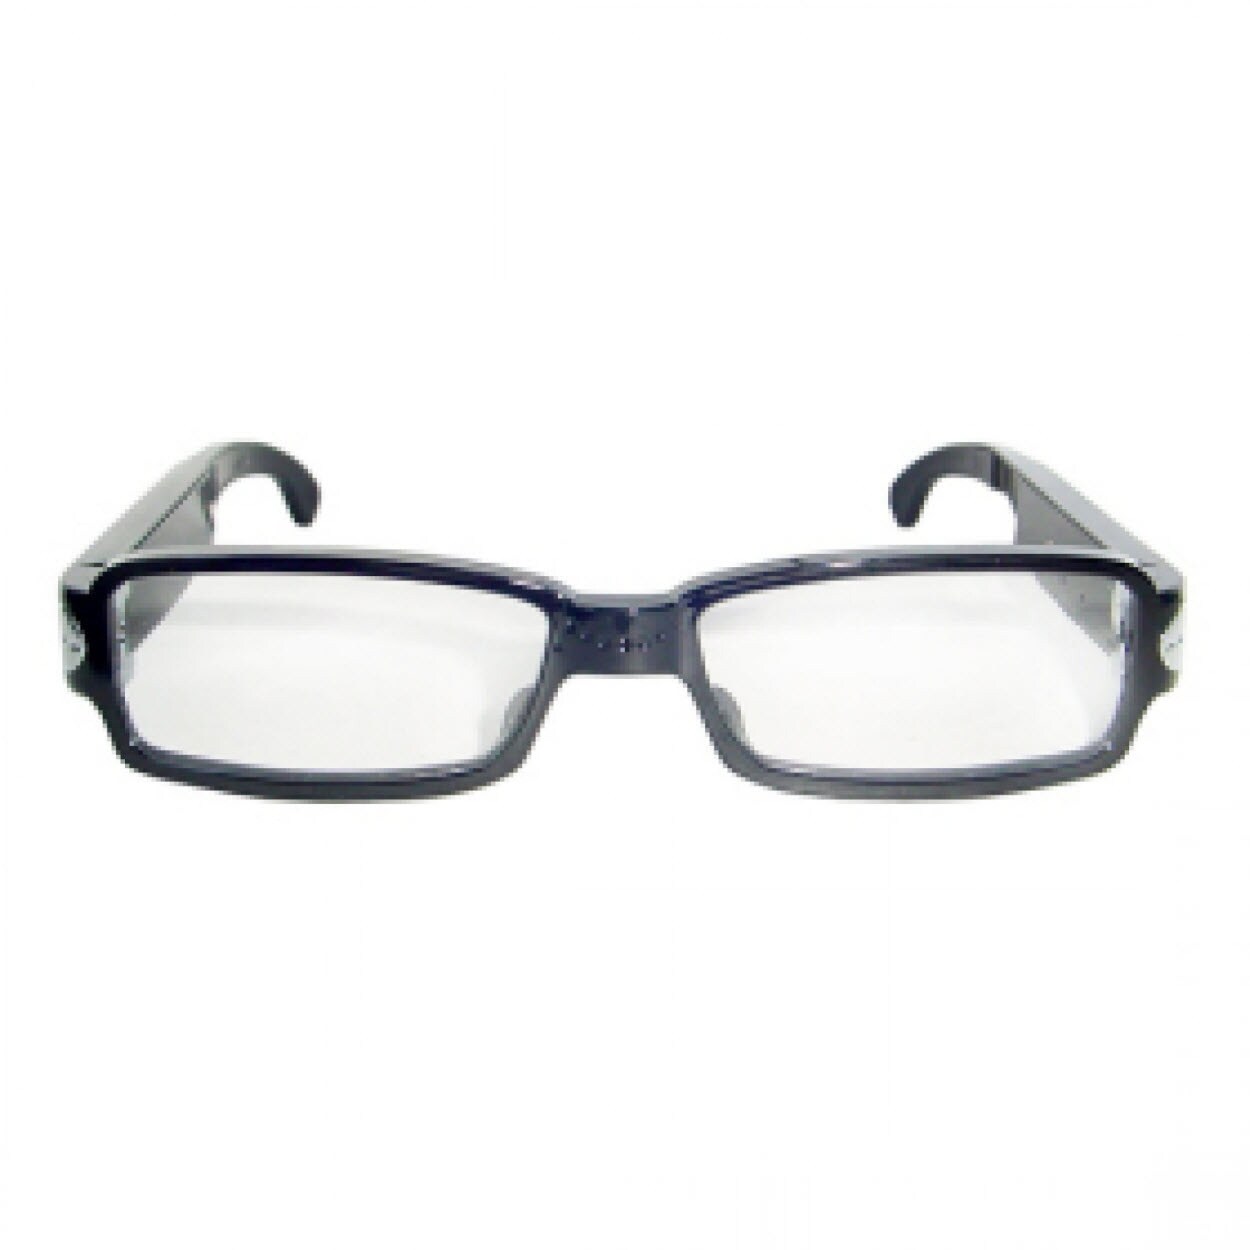 hidden camera in eyeglasses